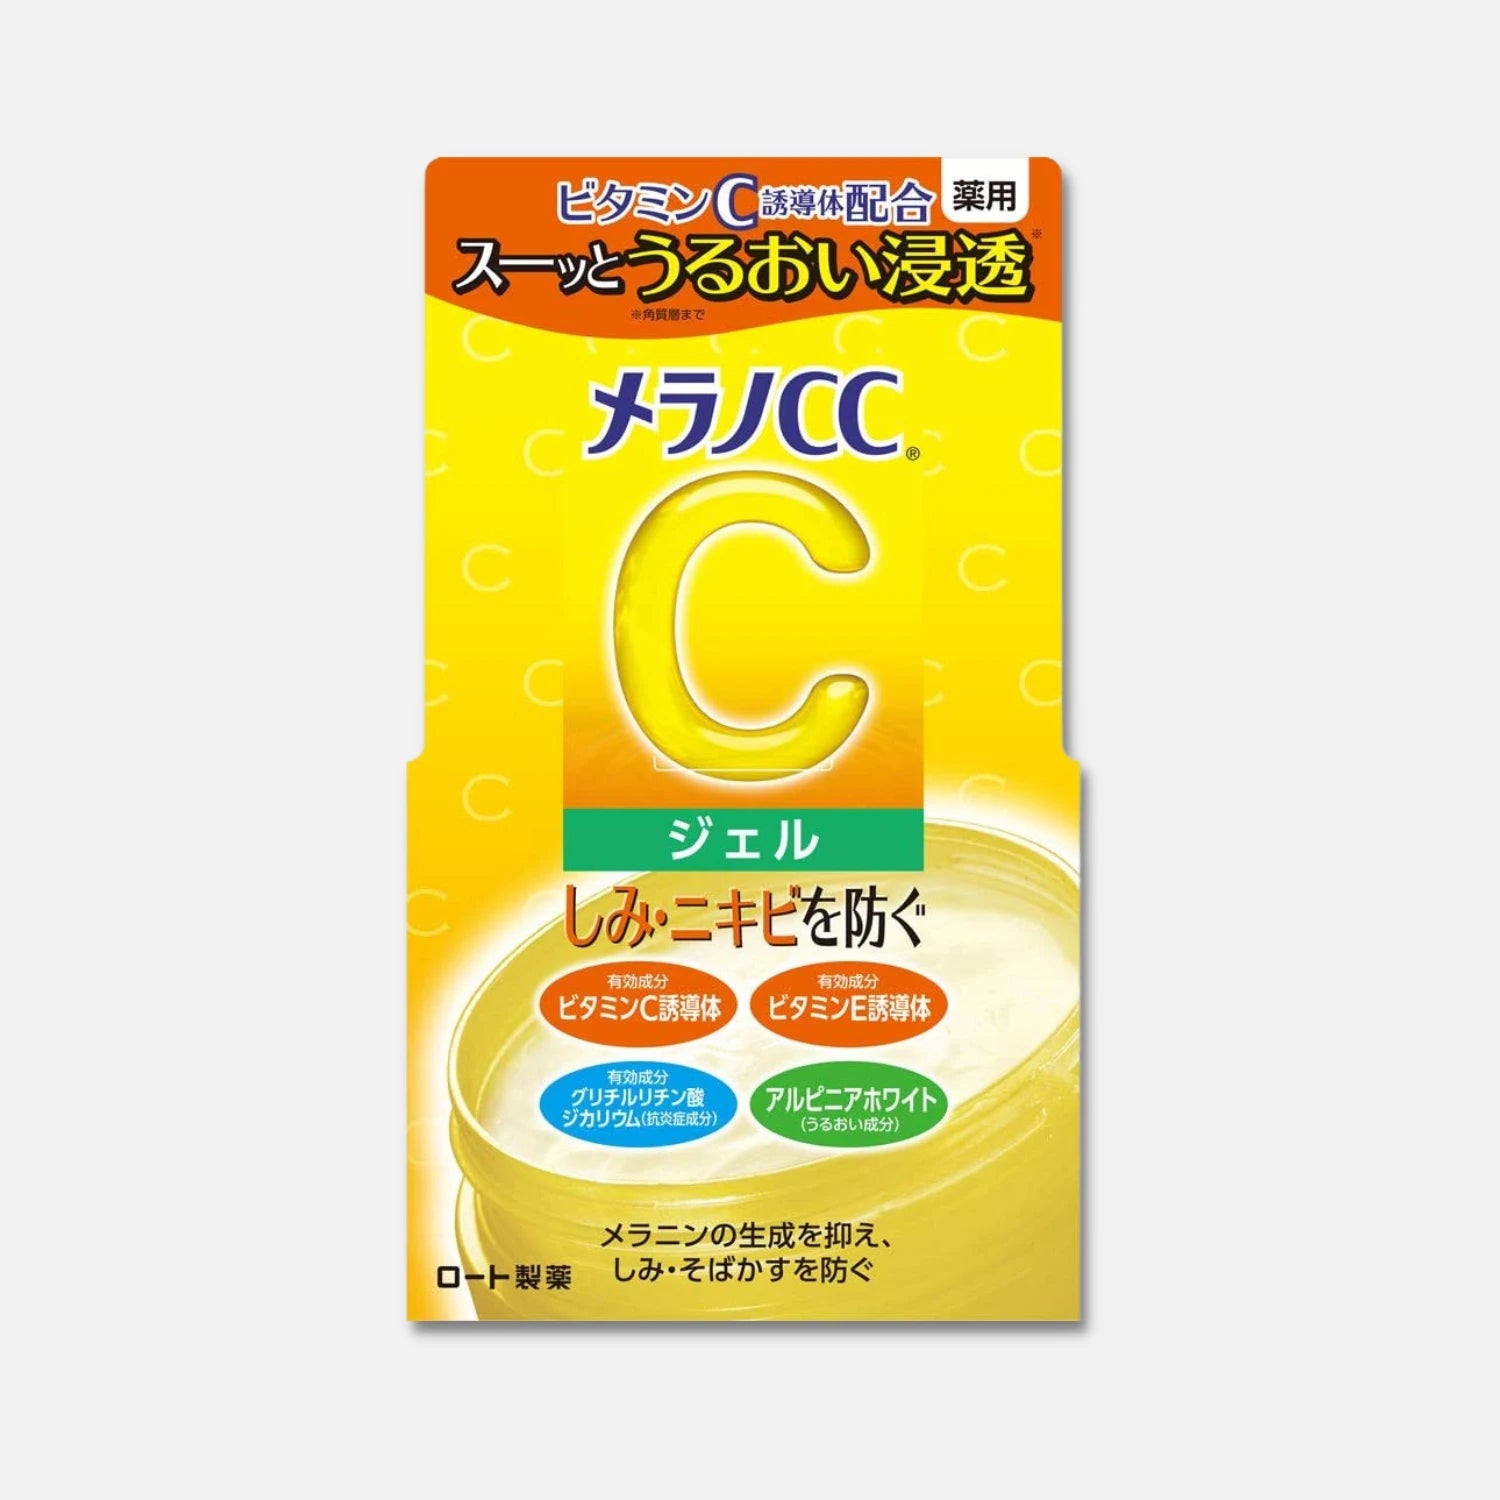 Melano CC Vitamin C Gel Cream 100g - Buy Me Japan